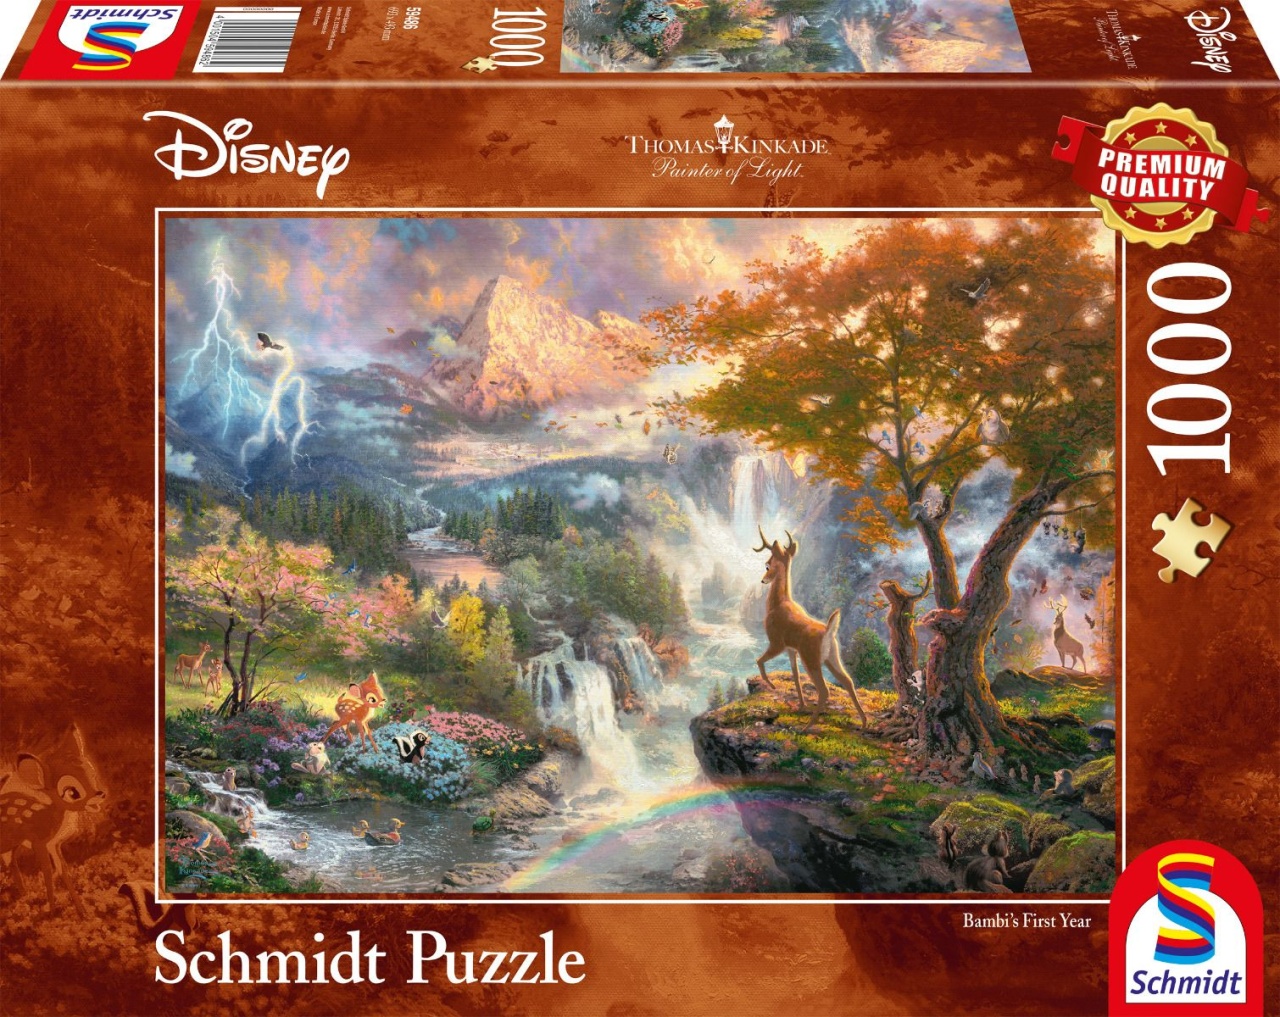 Schmidt Spiele Puzzle Thomas Kinkade Disney Bambi 1000